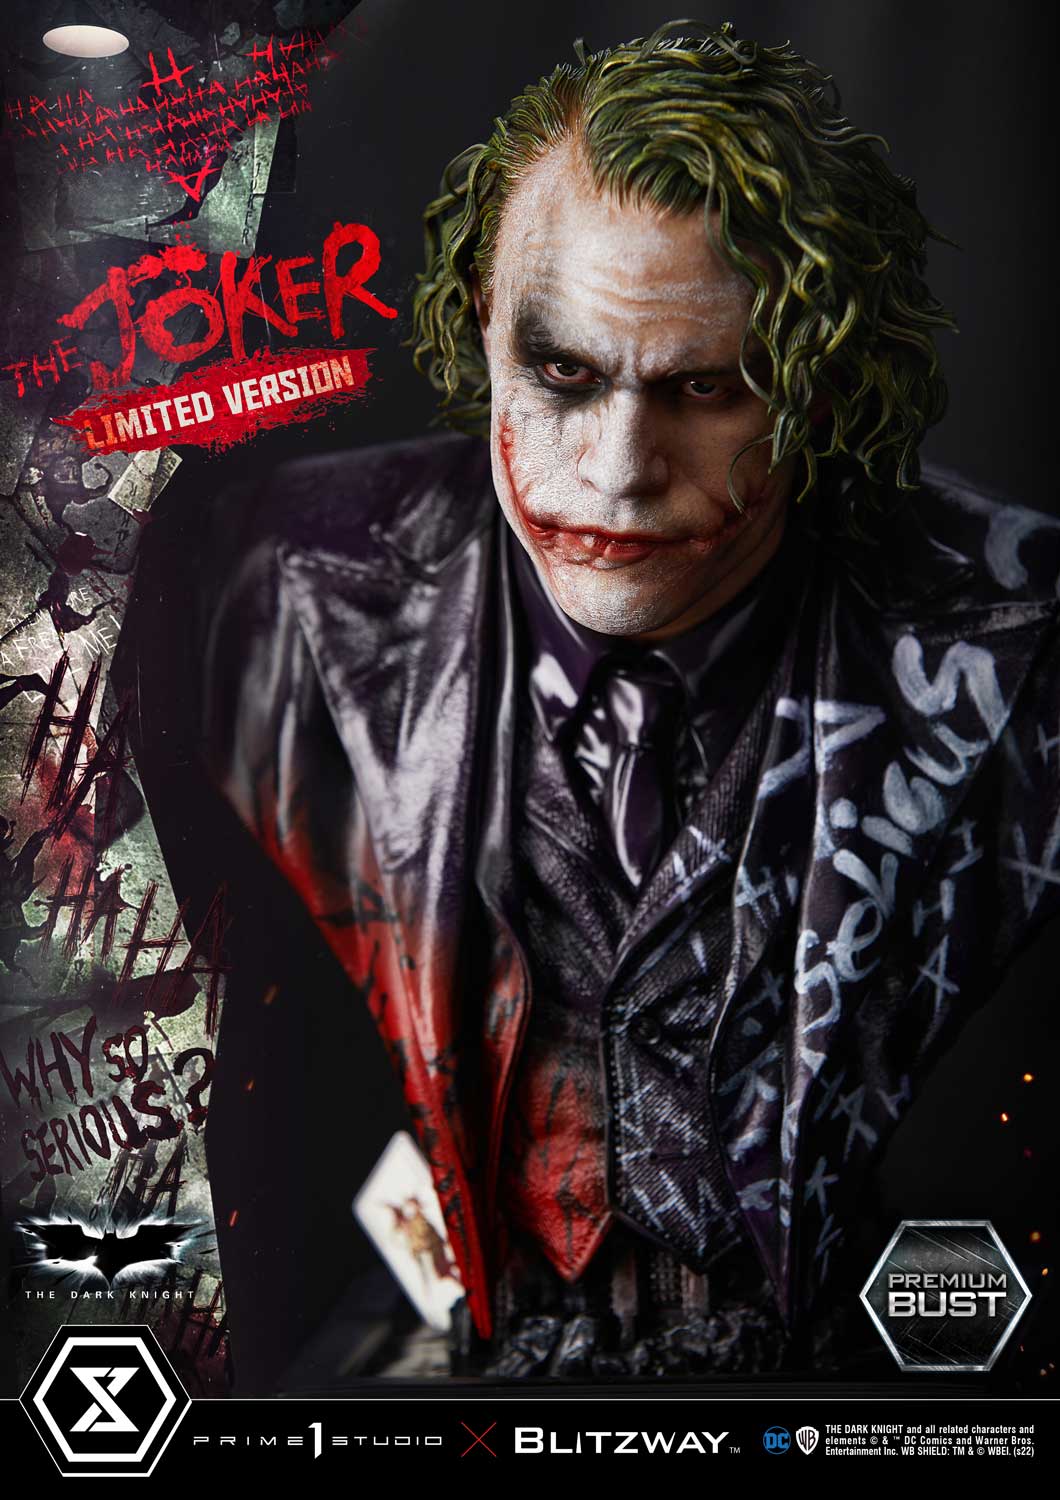 Premium Bust The Dark Knight (Film) The Joker Limited Version